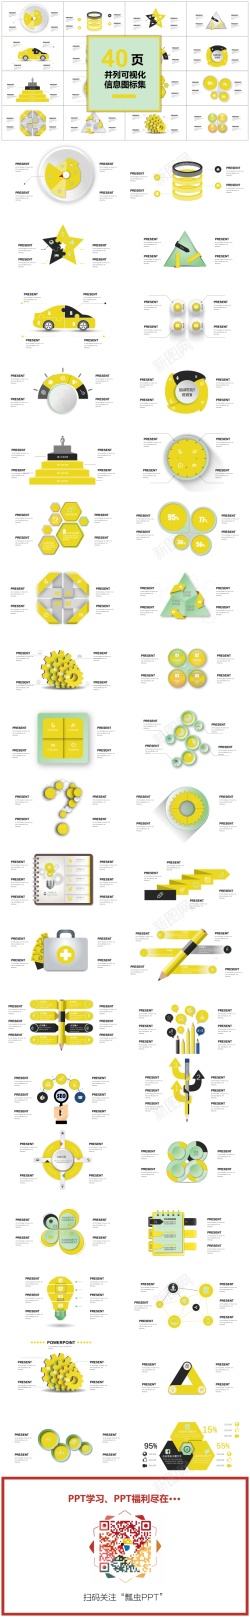 00140页黄色并列可视化图表集PPT模板